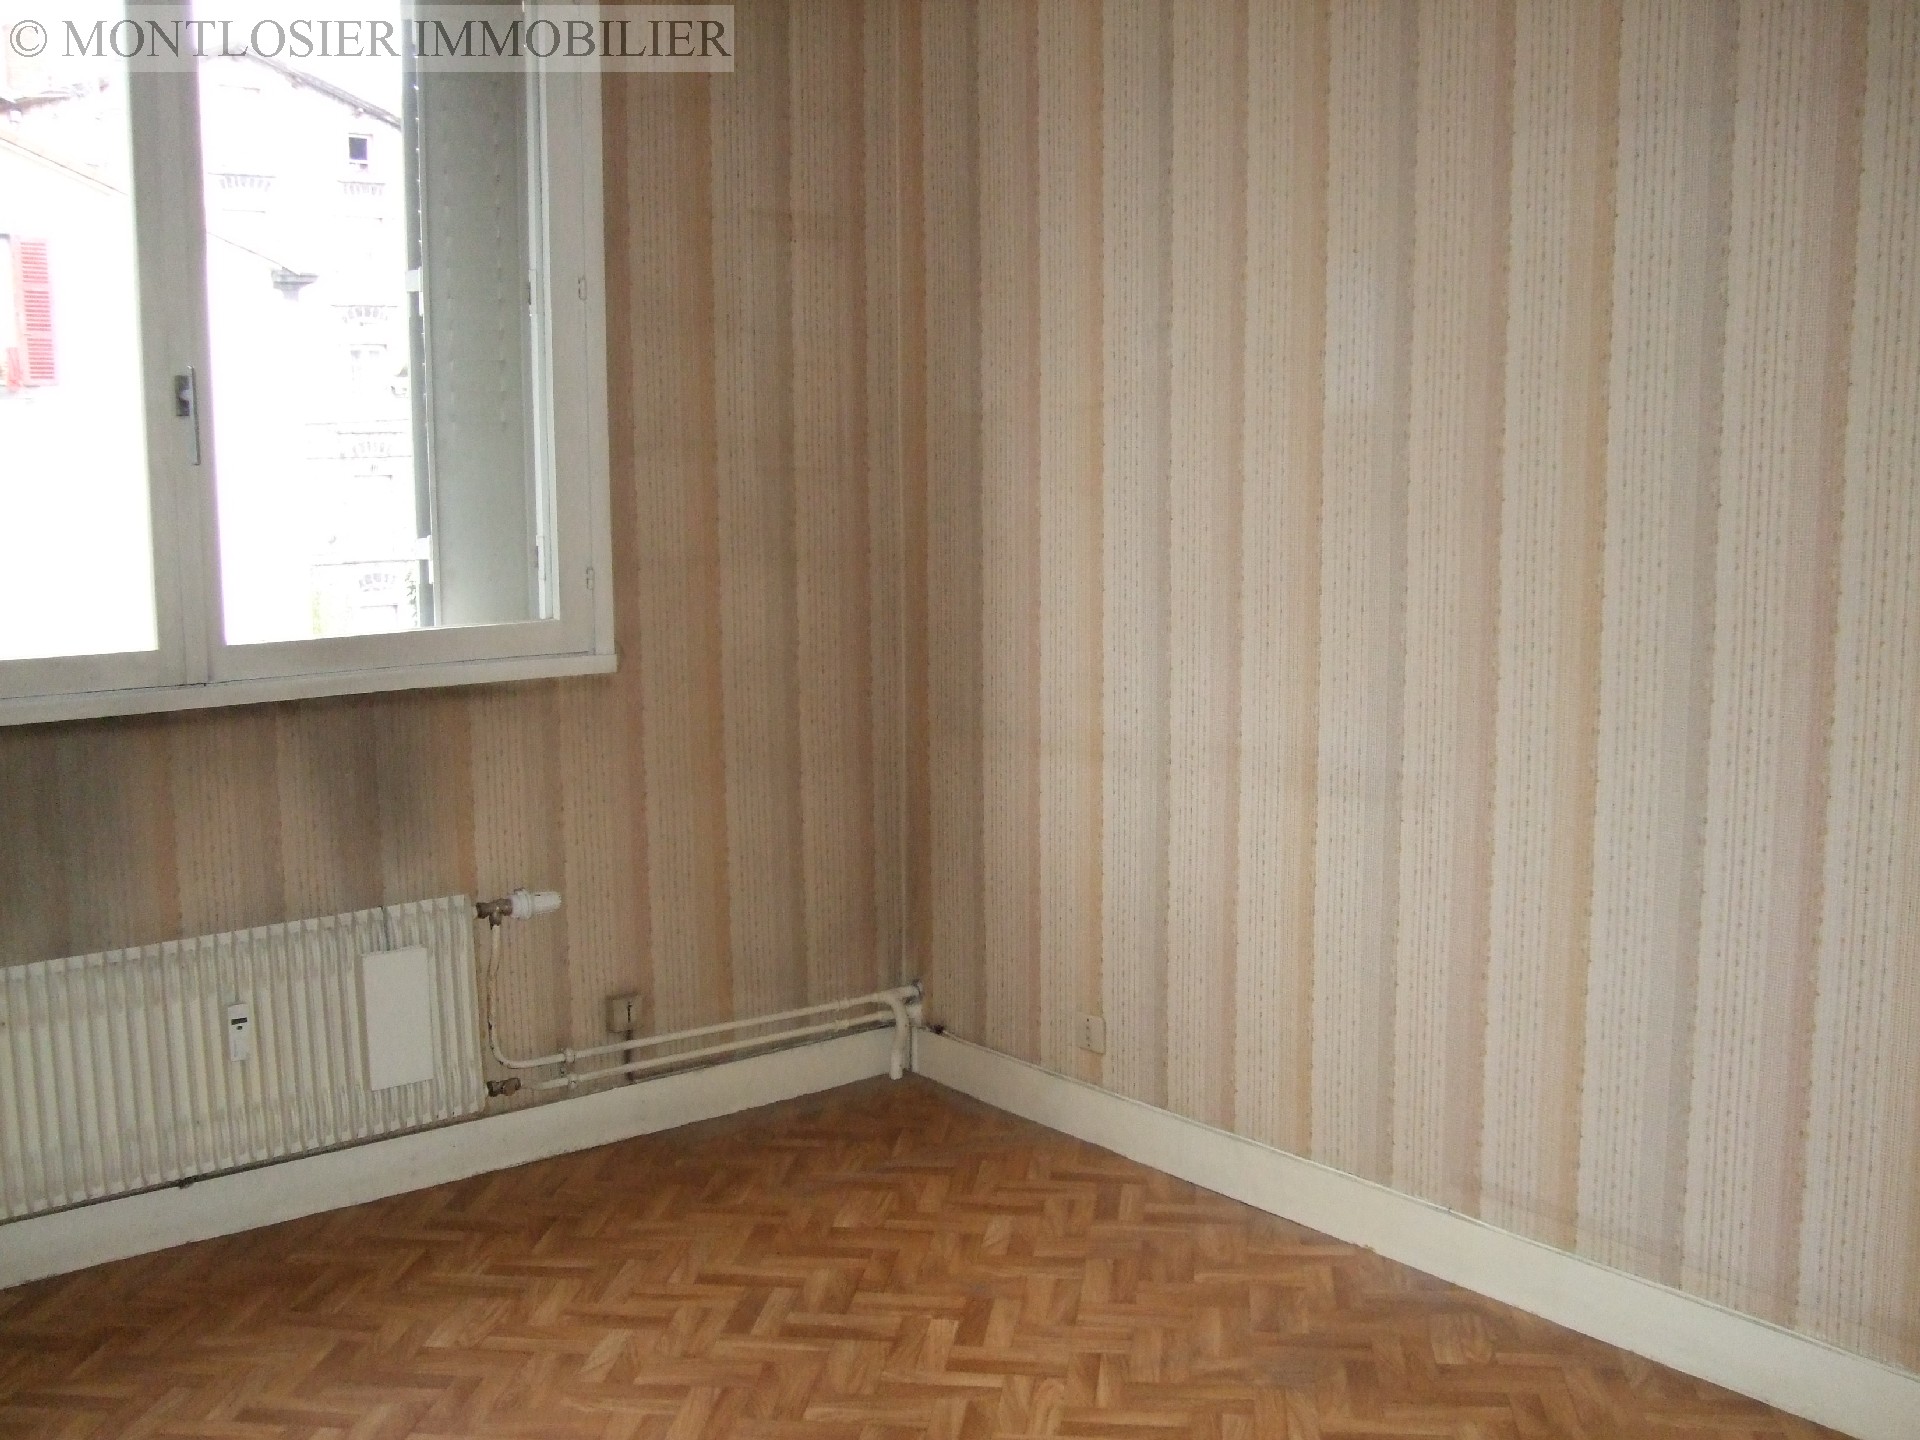 Appartement à vendre, CLERMONT-FERRAND, 63,56 m², 3 pièces